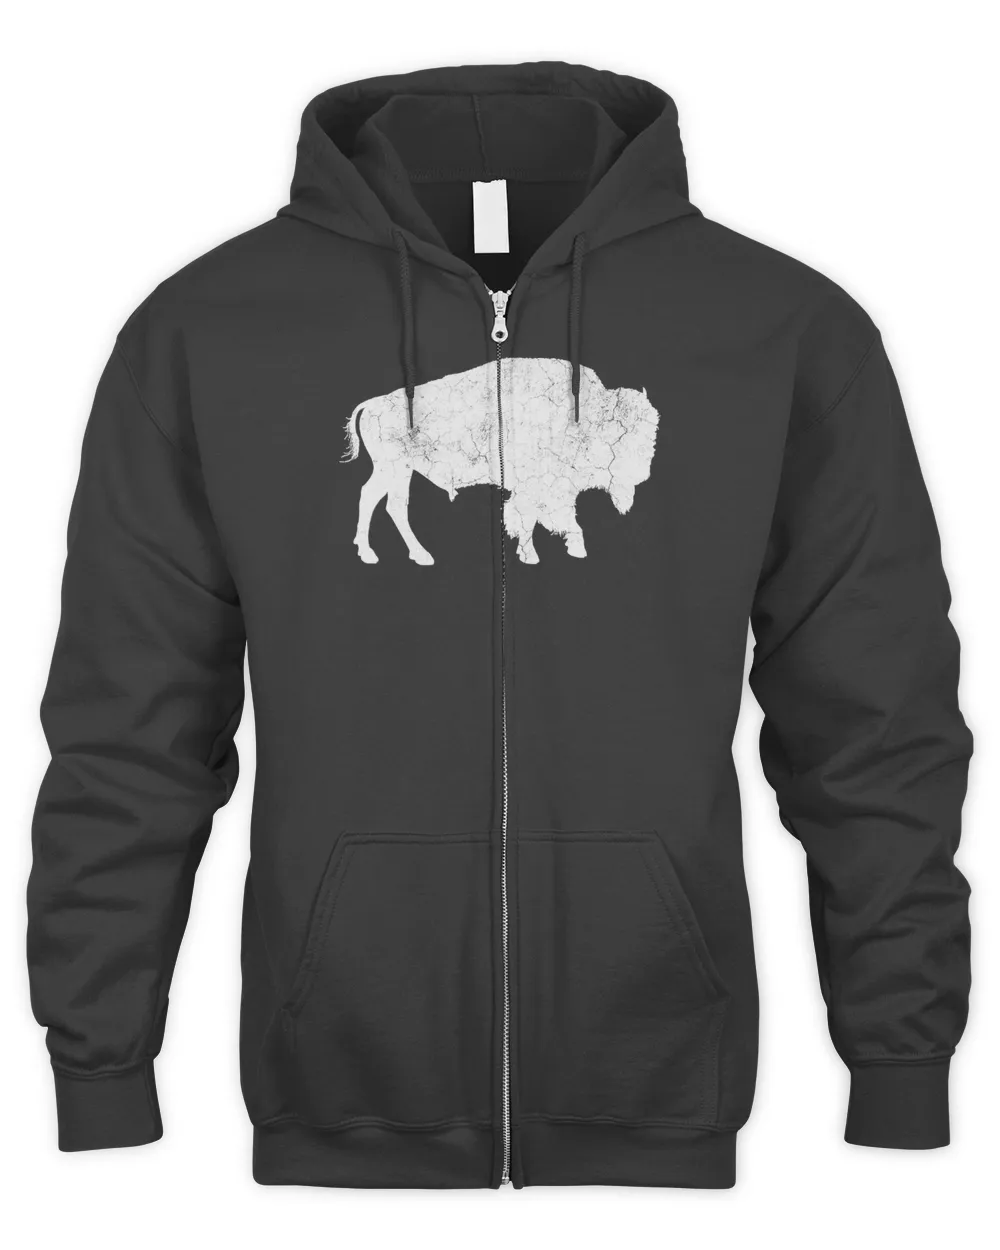 Distressed Buffalo Retro Bison Animal Lover Men Women Dad T-Shirt